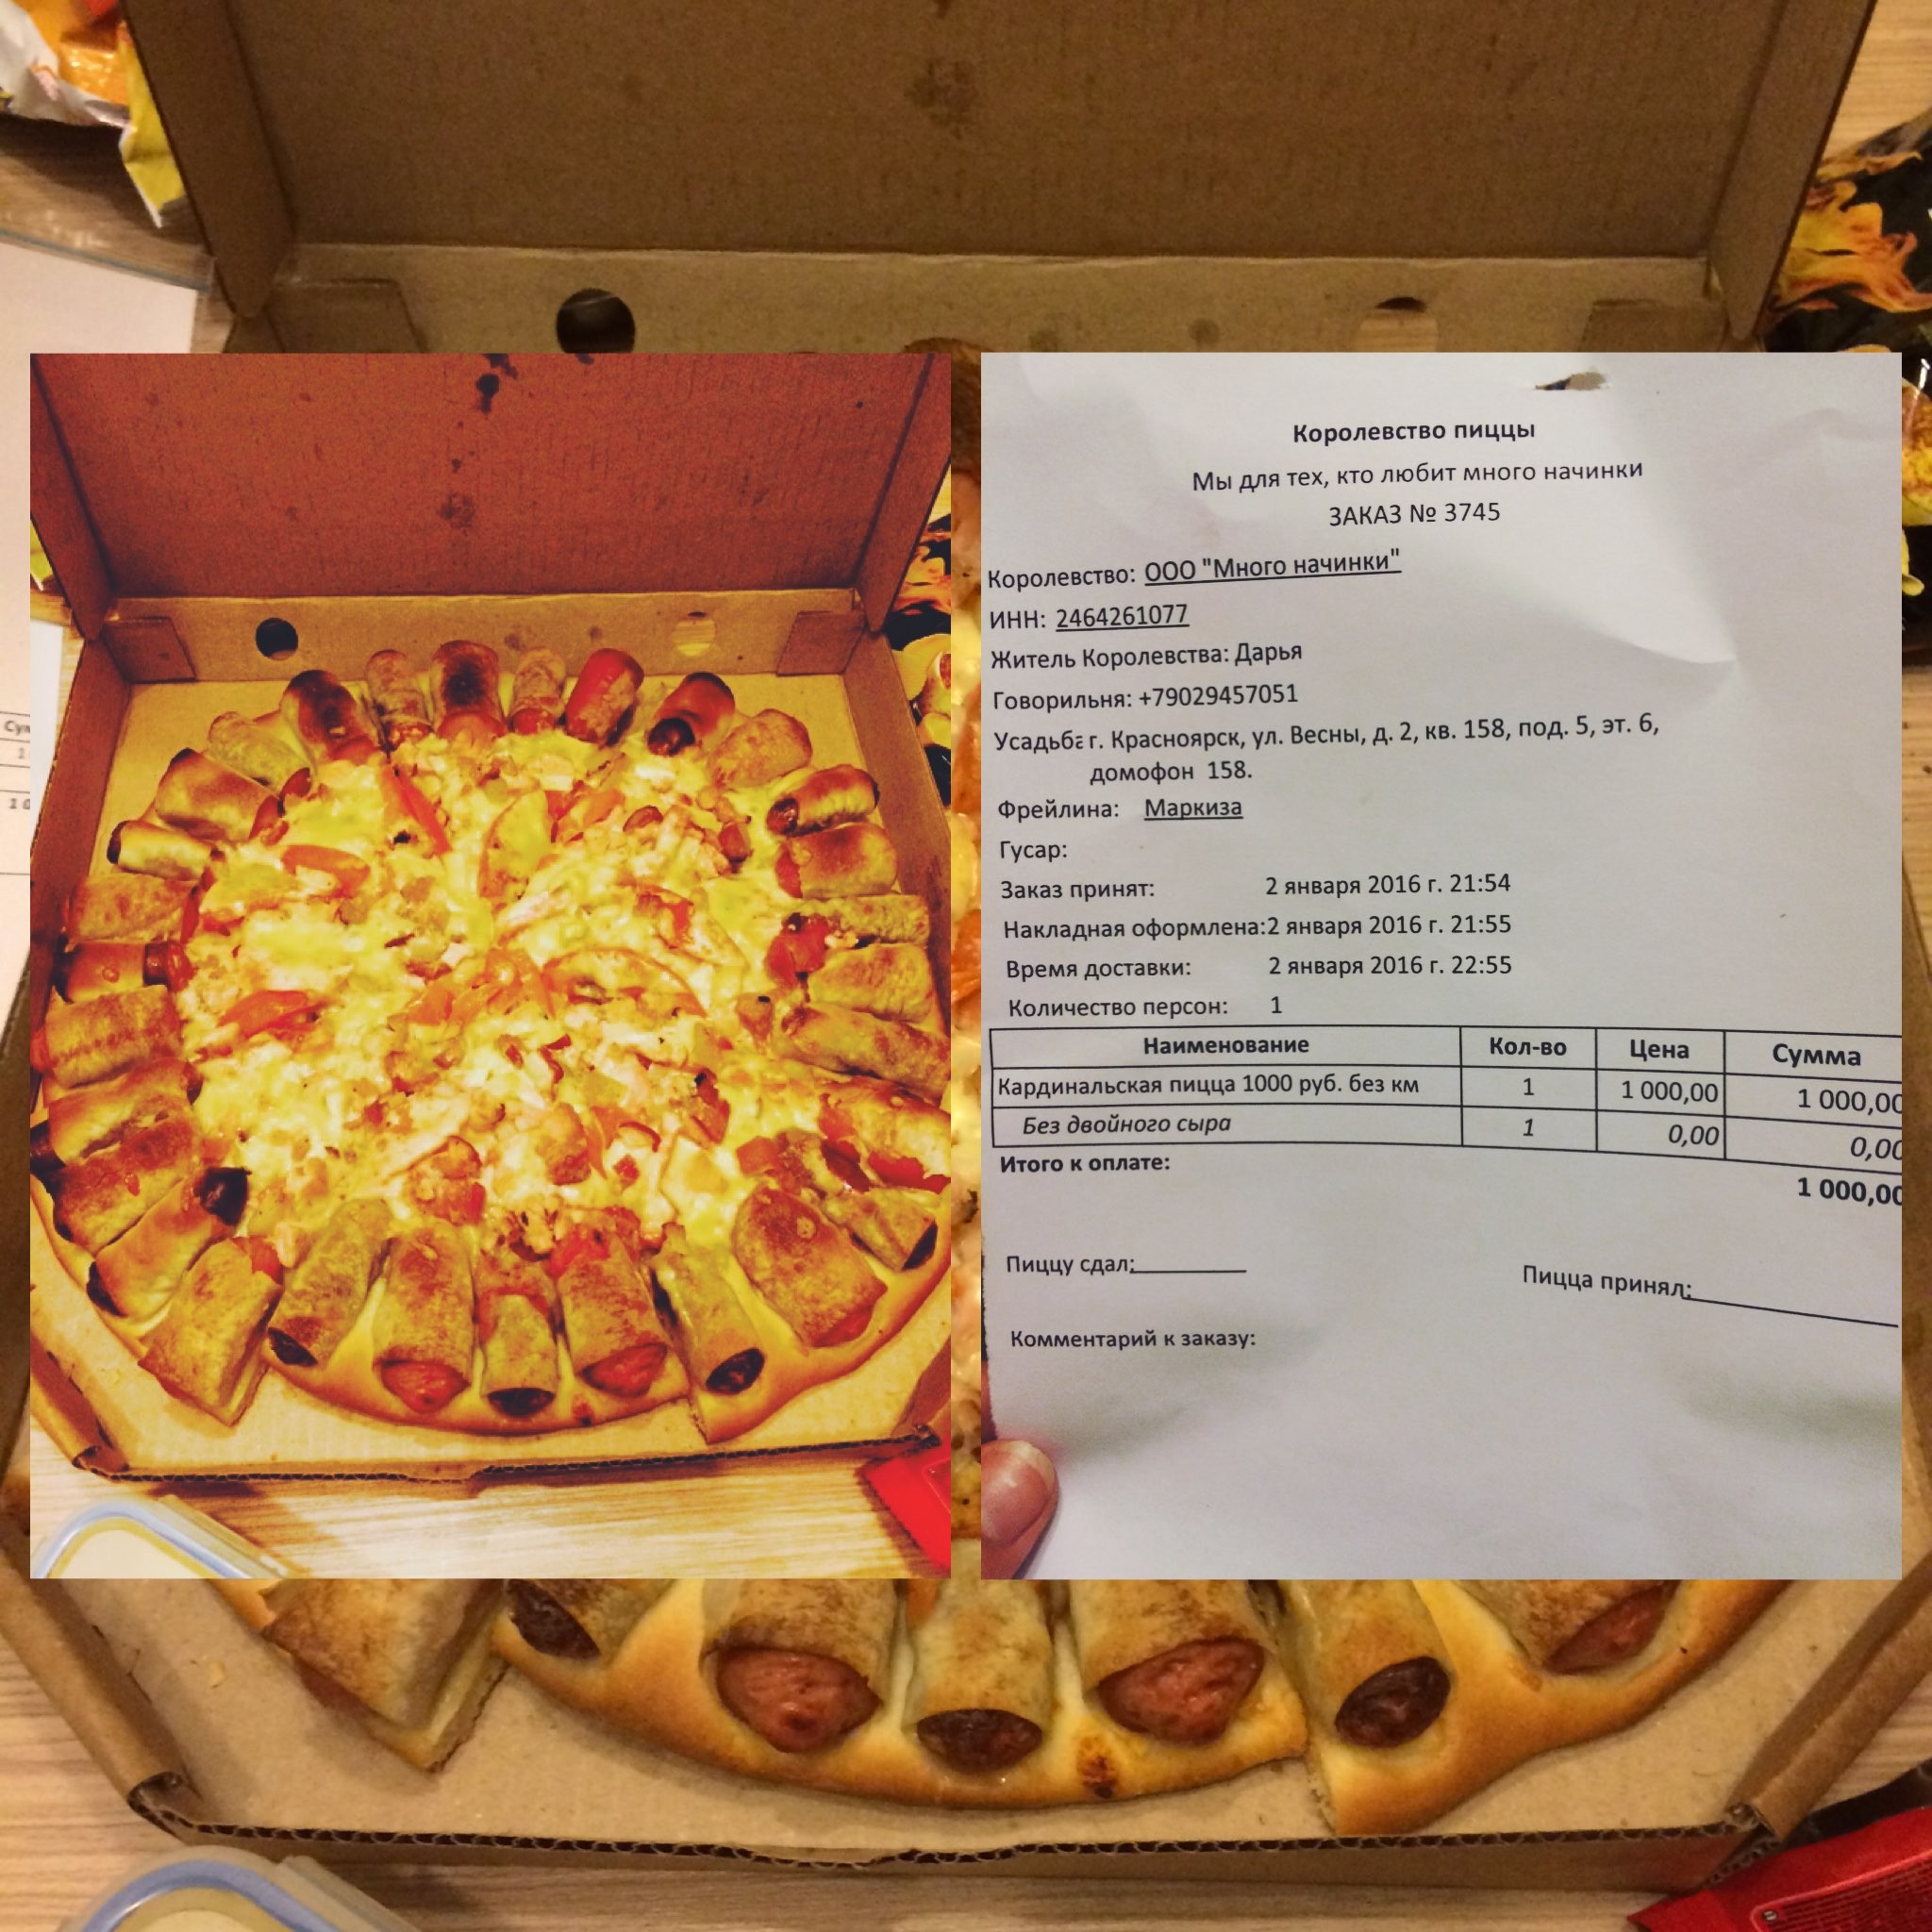 лучшая пицца в красноярске рейтинг фото 78